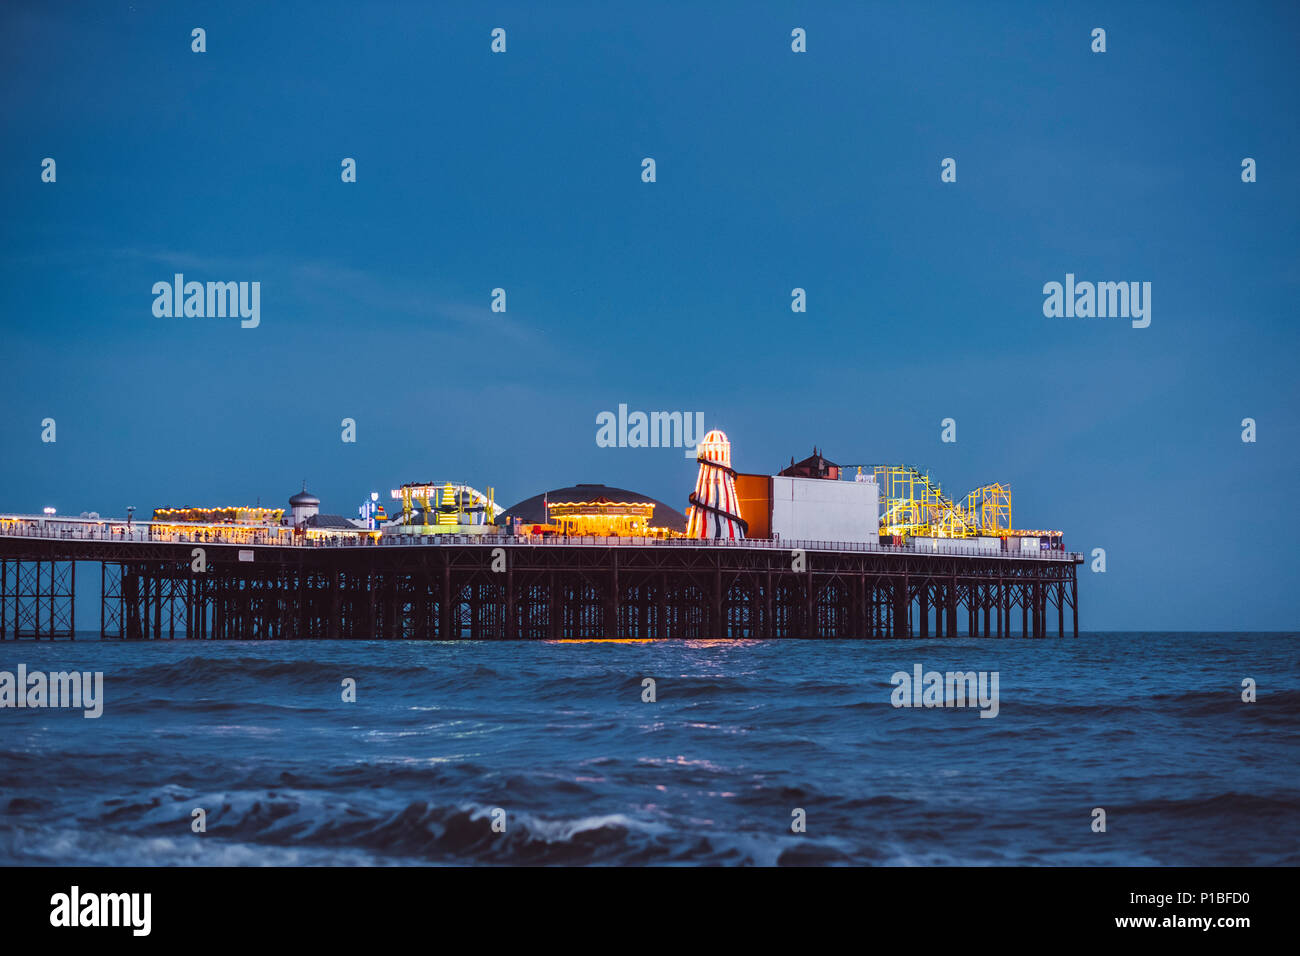 Brighton pier at night, Brighton, England Stock Photo